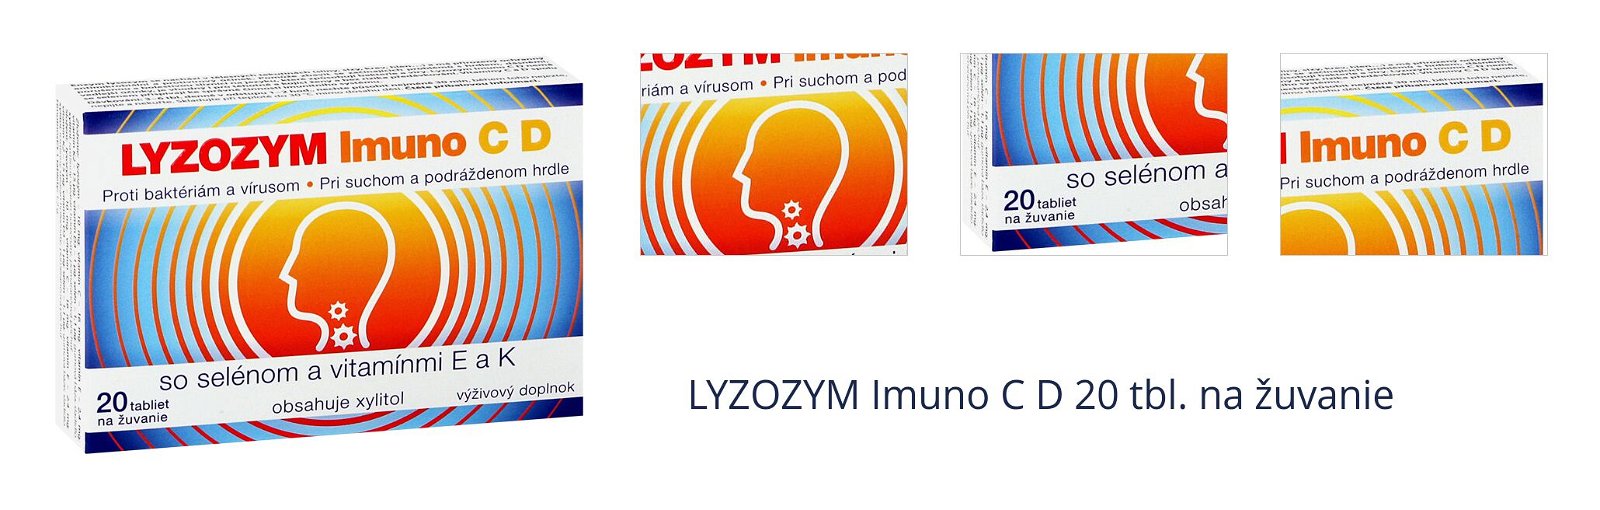 LYZOZYM Imuno C D 20 tbl. na žuvanie 1